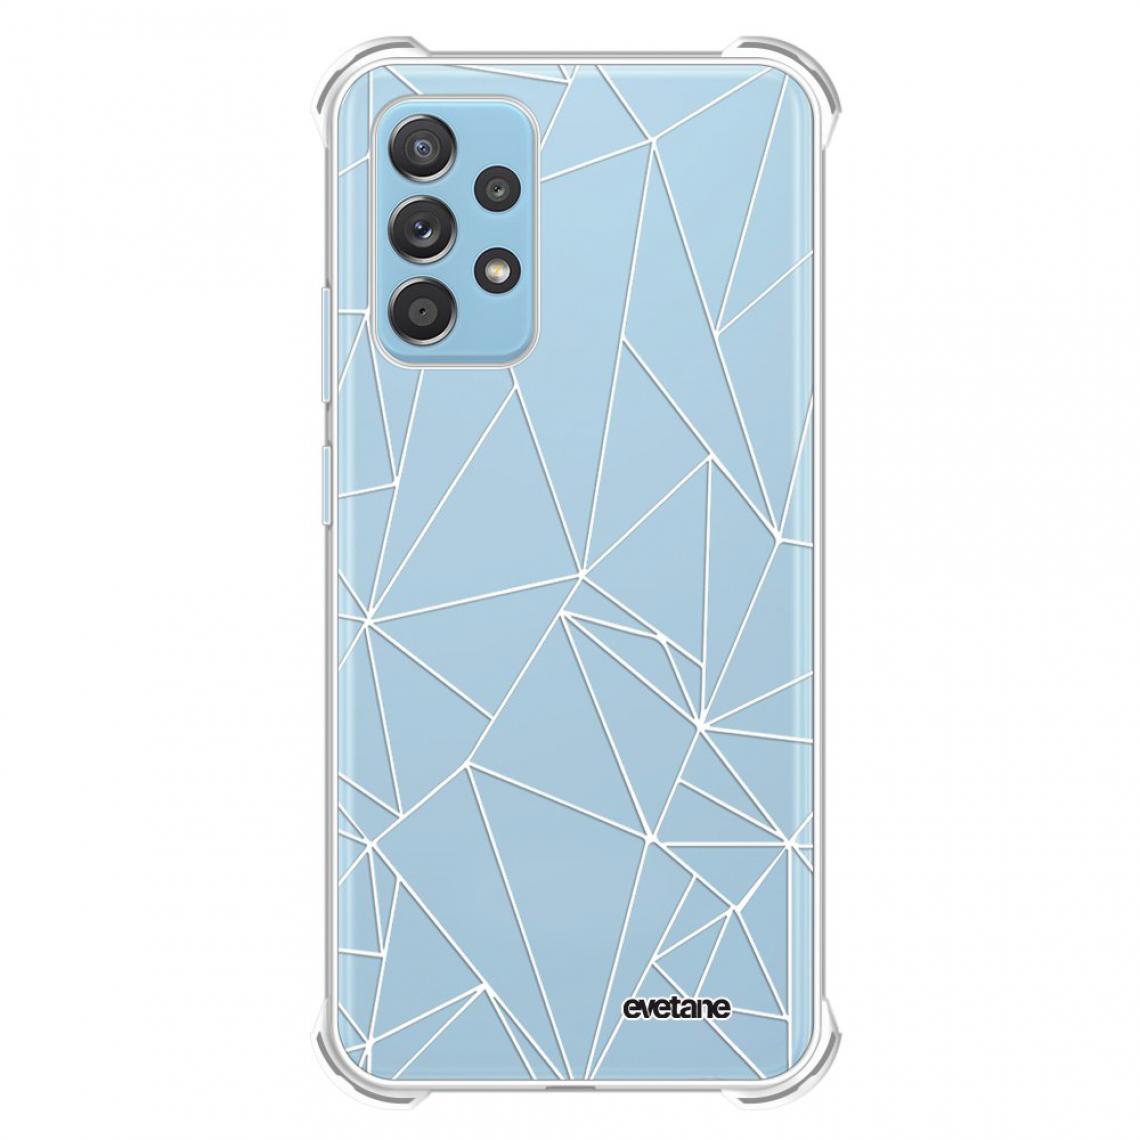 Evetane - Coque Samsung Galaxy A52 silicone anti-choc souple angles renforcés transparente - Coque, étui smartphone